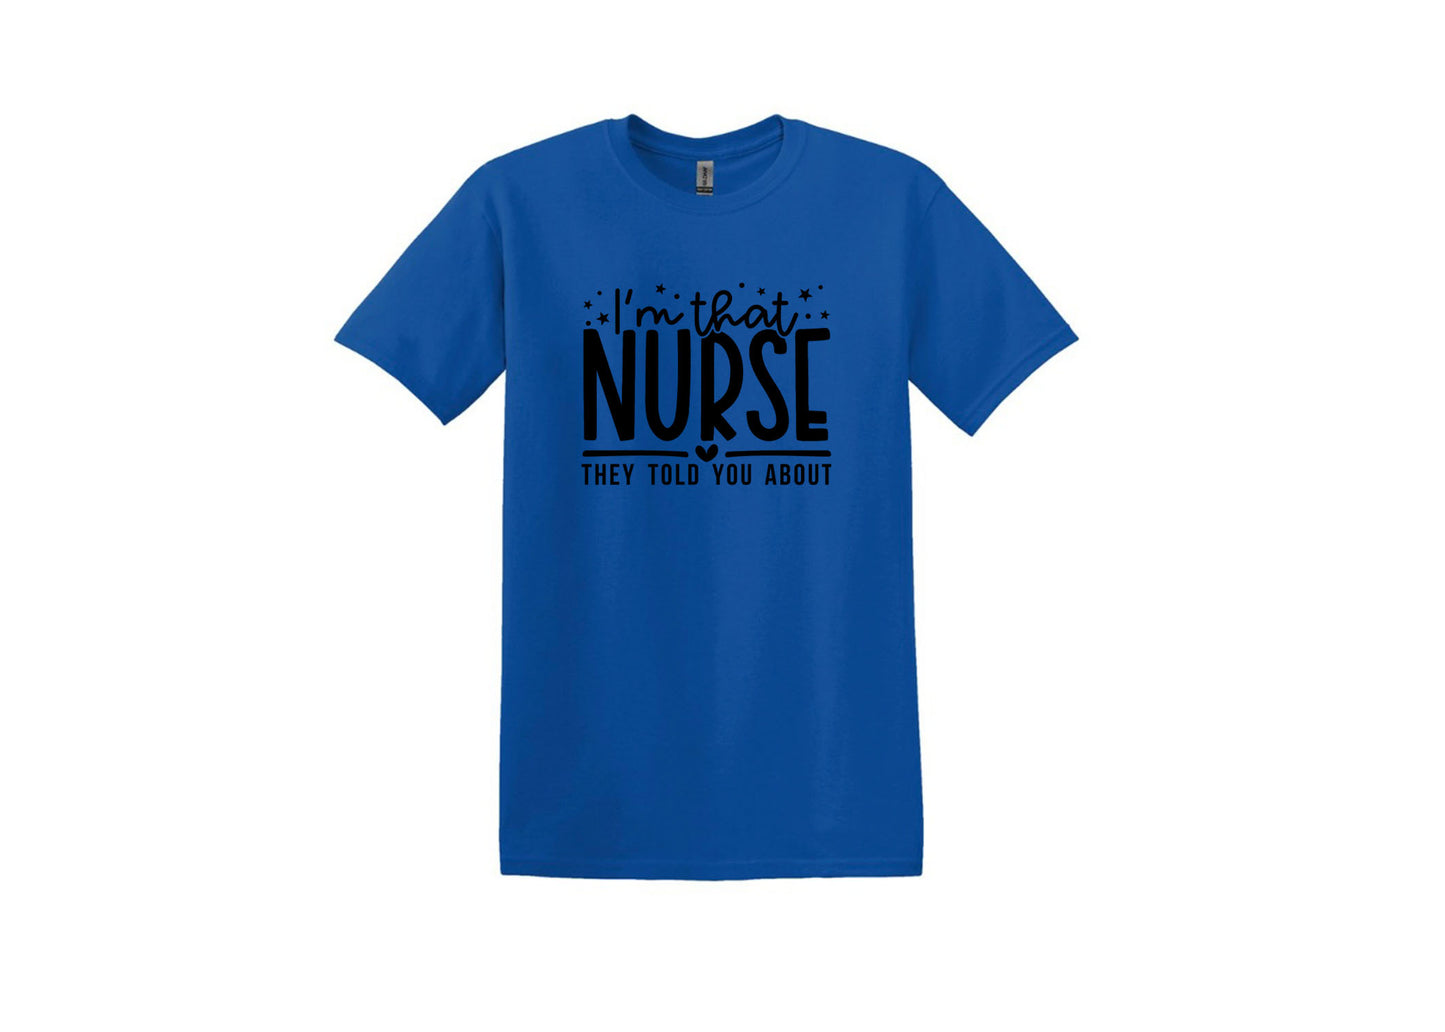 Im that Nurse